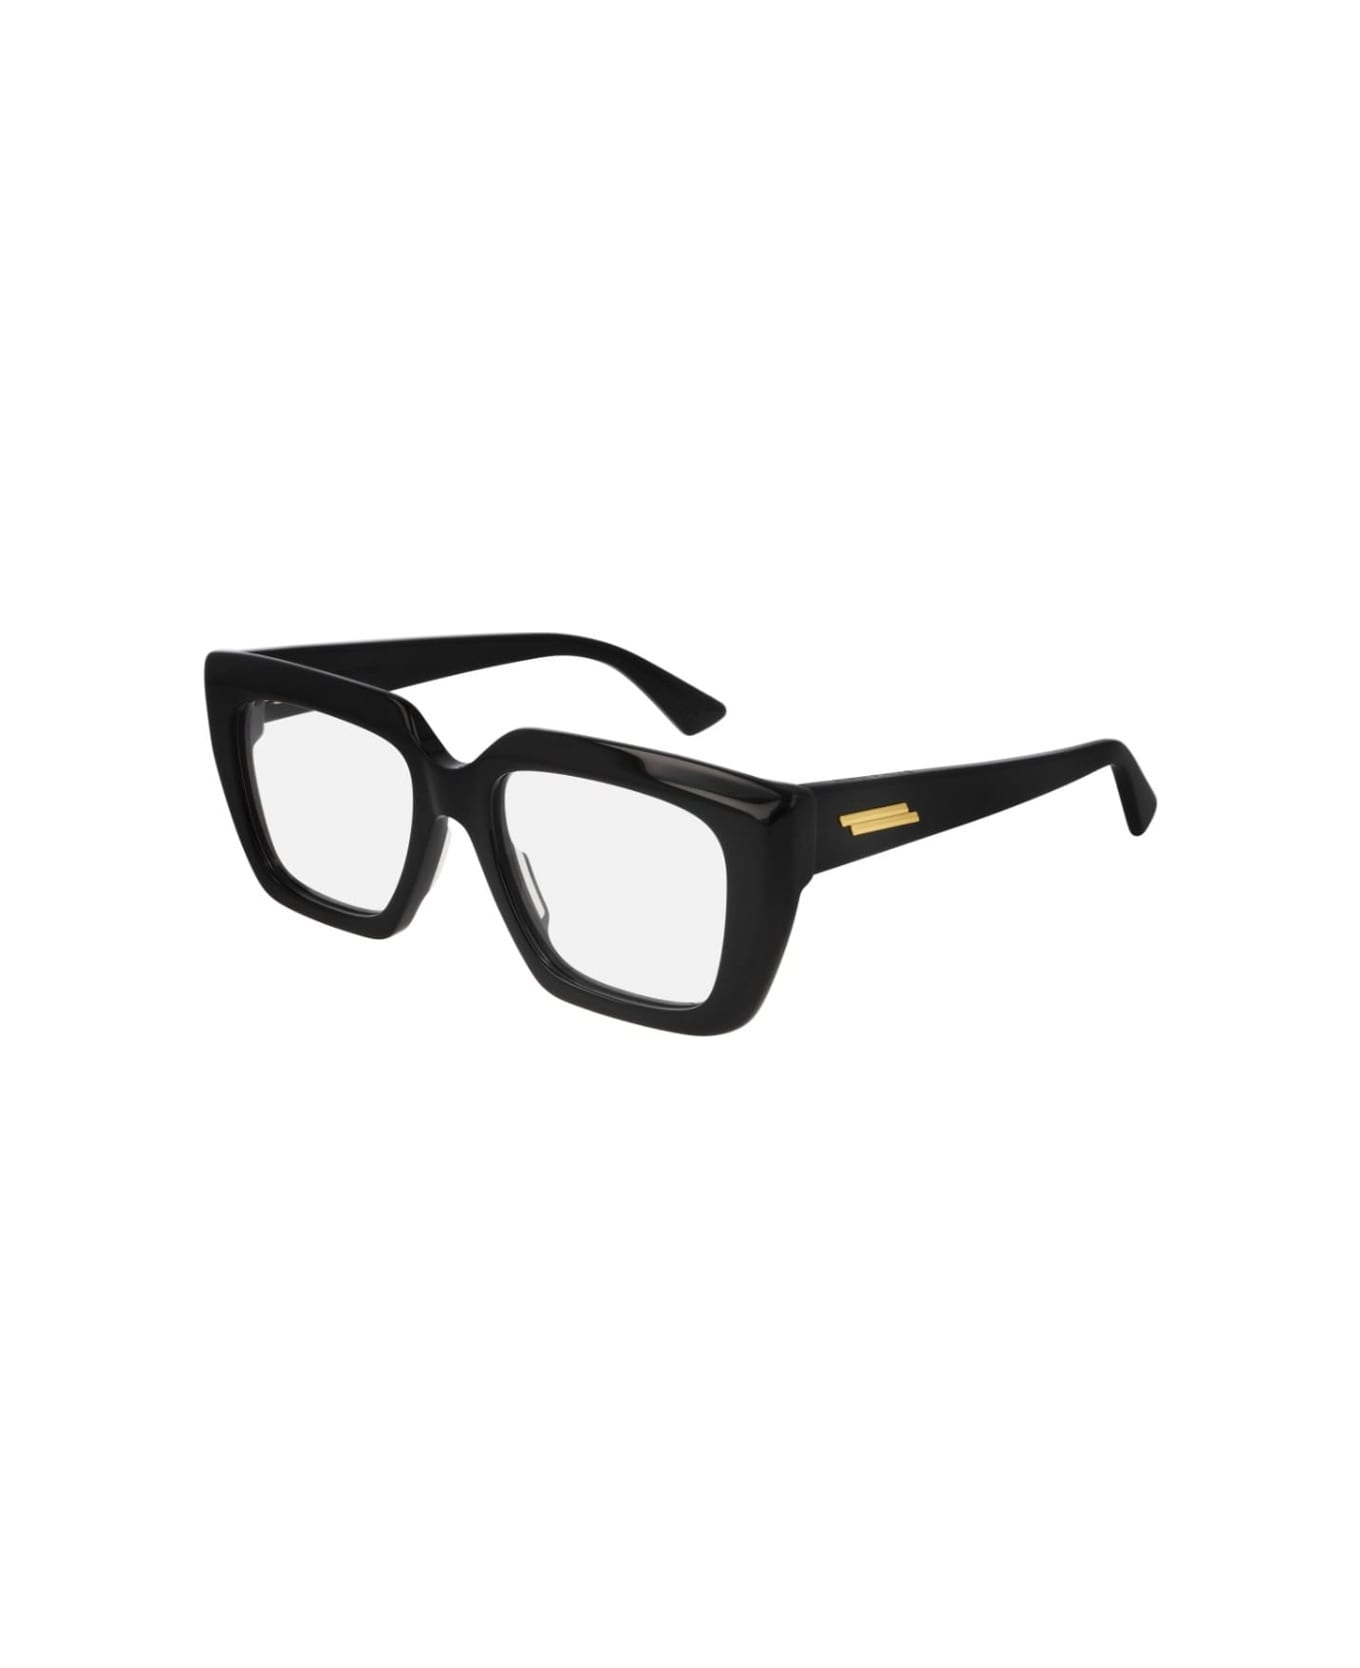 Bottega Veneta Eyewear BV1032o Glasses - Nero